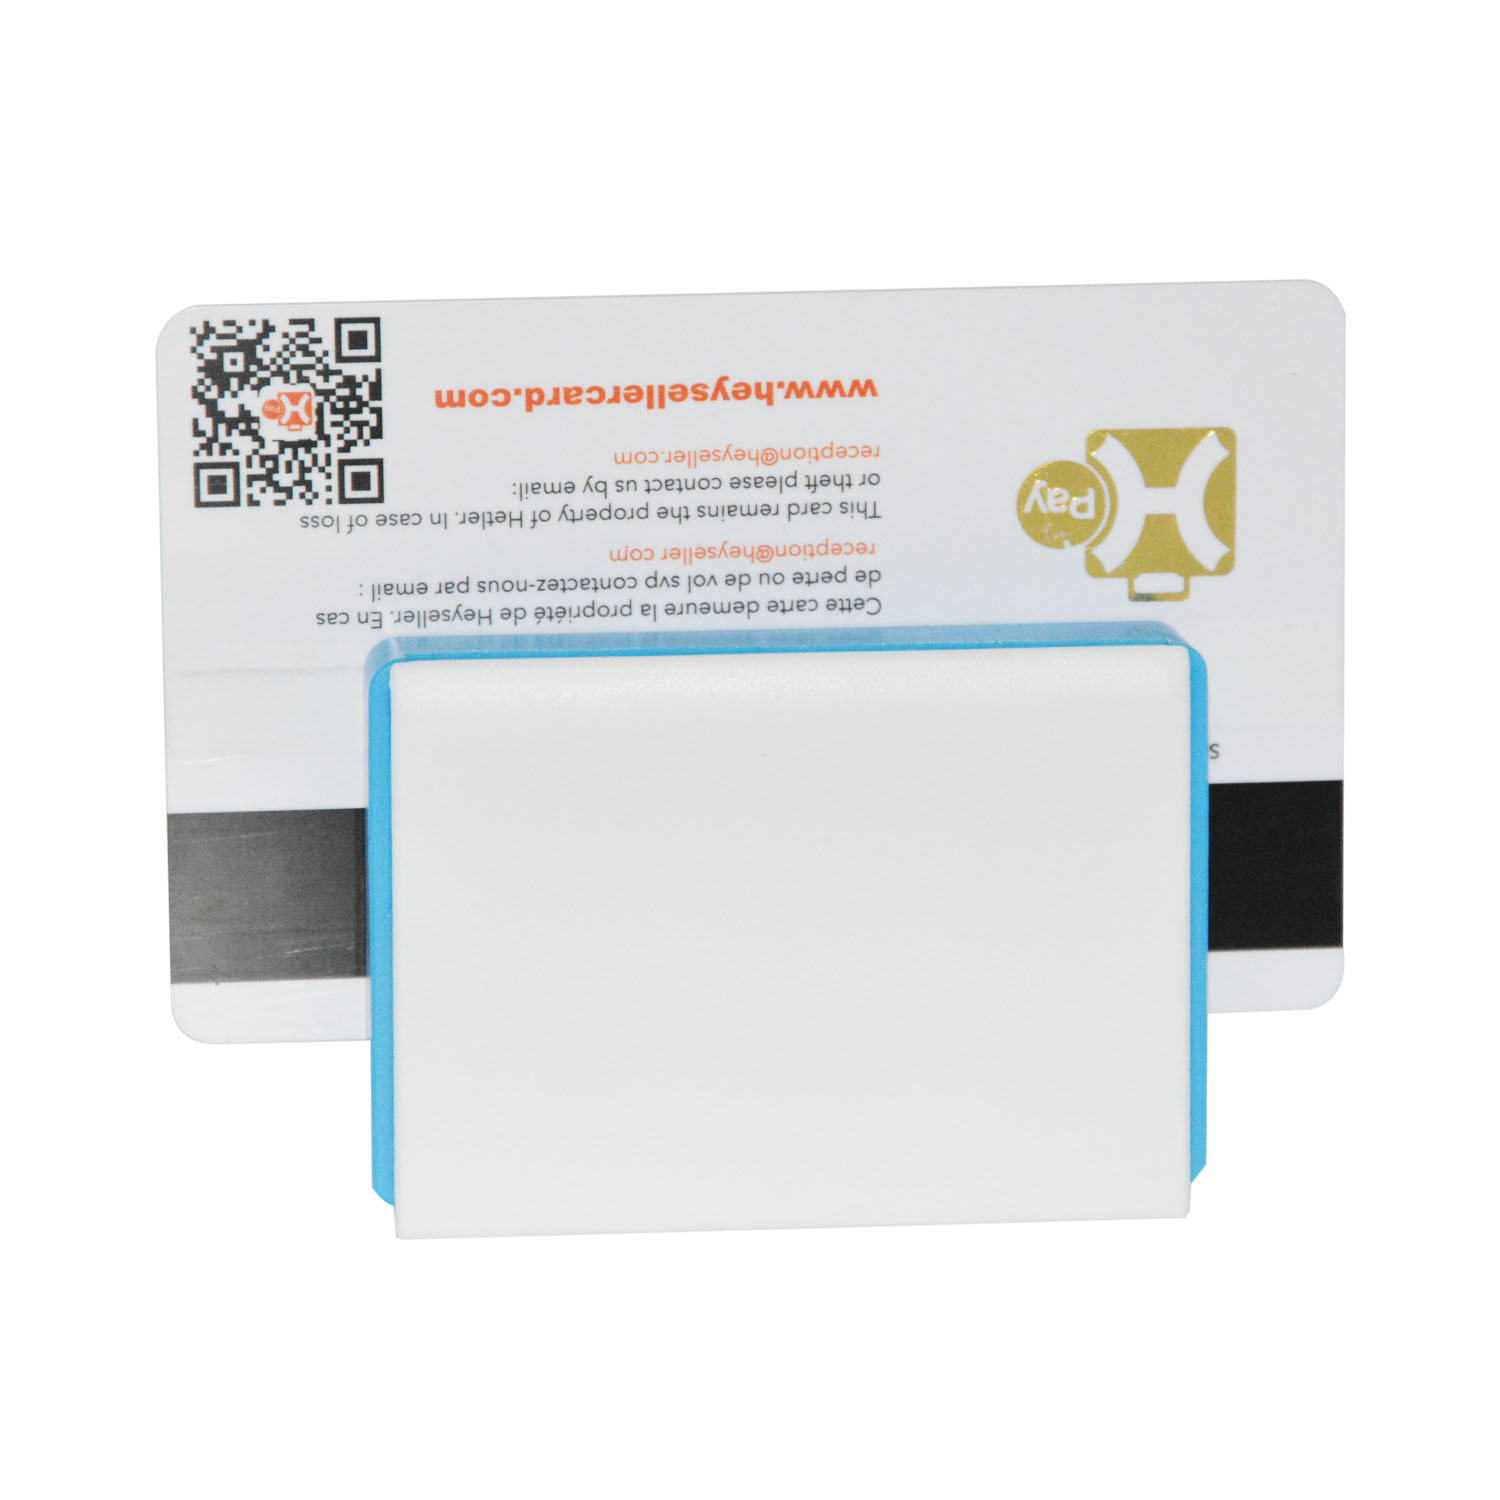 Горячая продажа Bluetooth Android IOS Mobile Card Reader для мобильных платежей MPR100